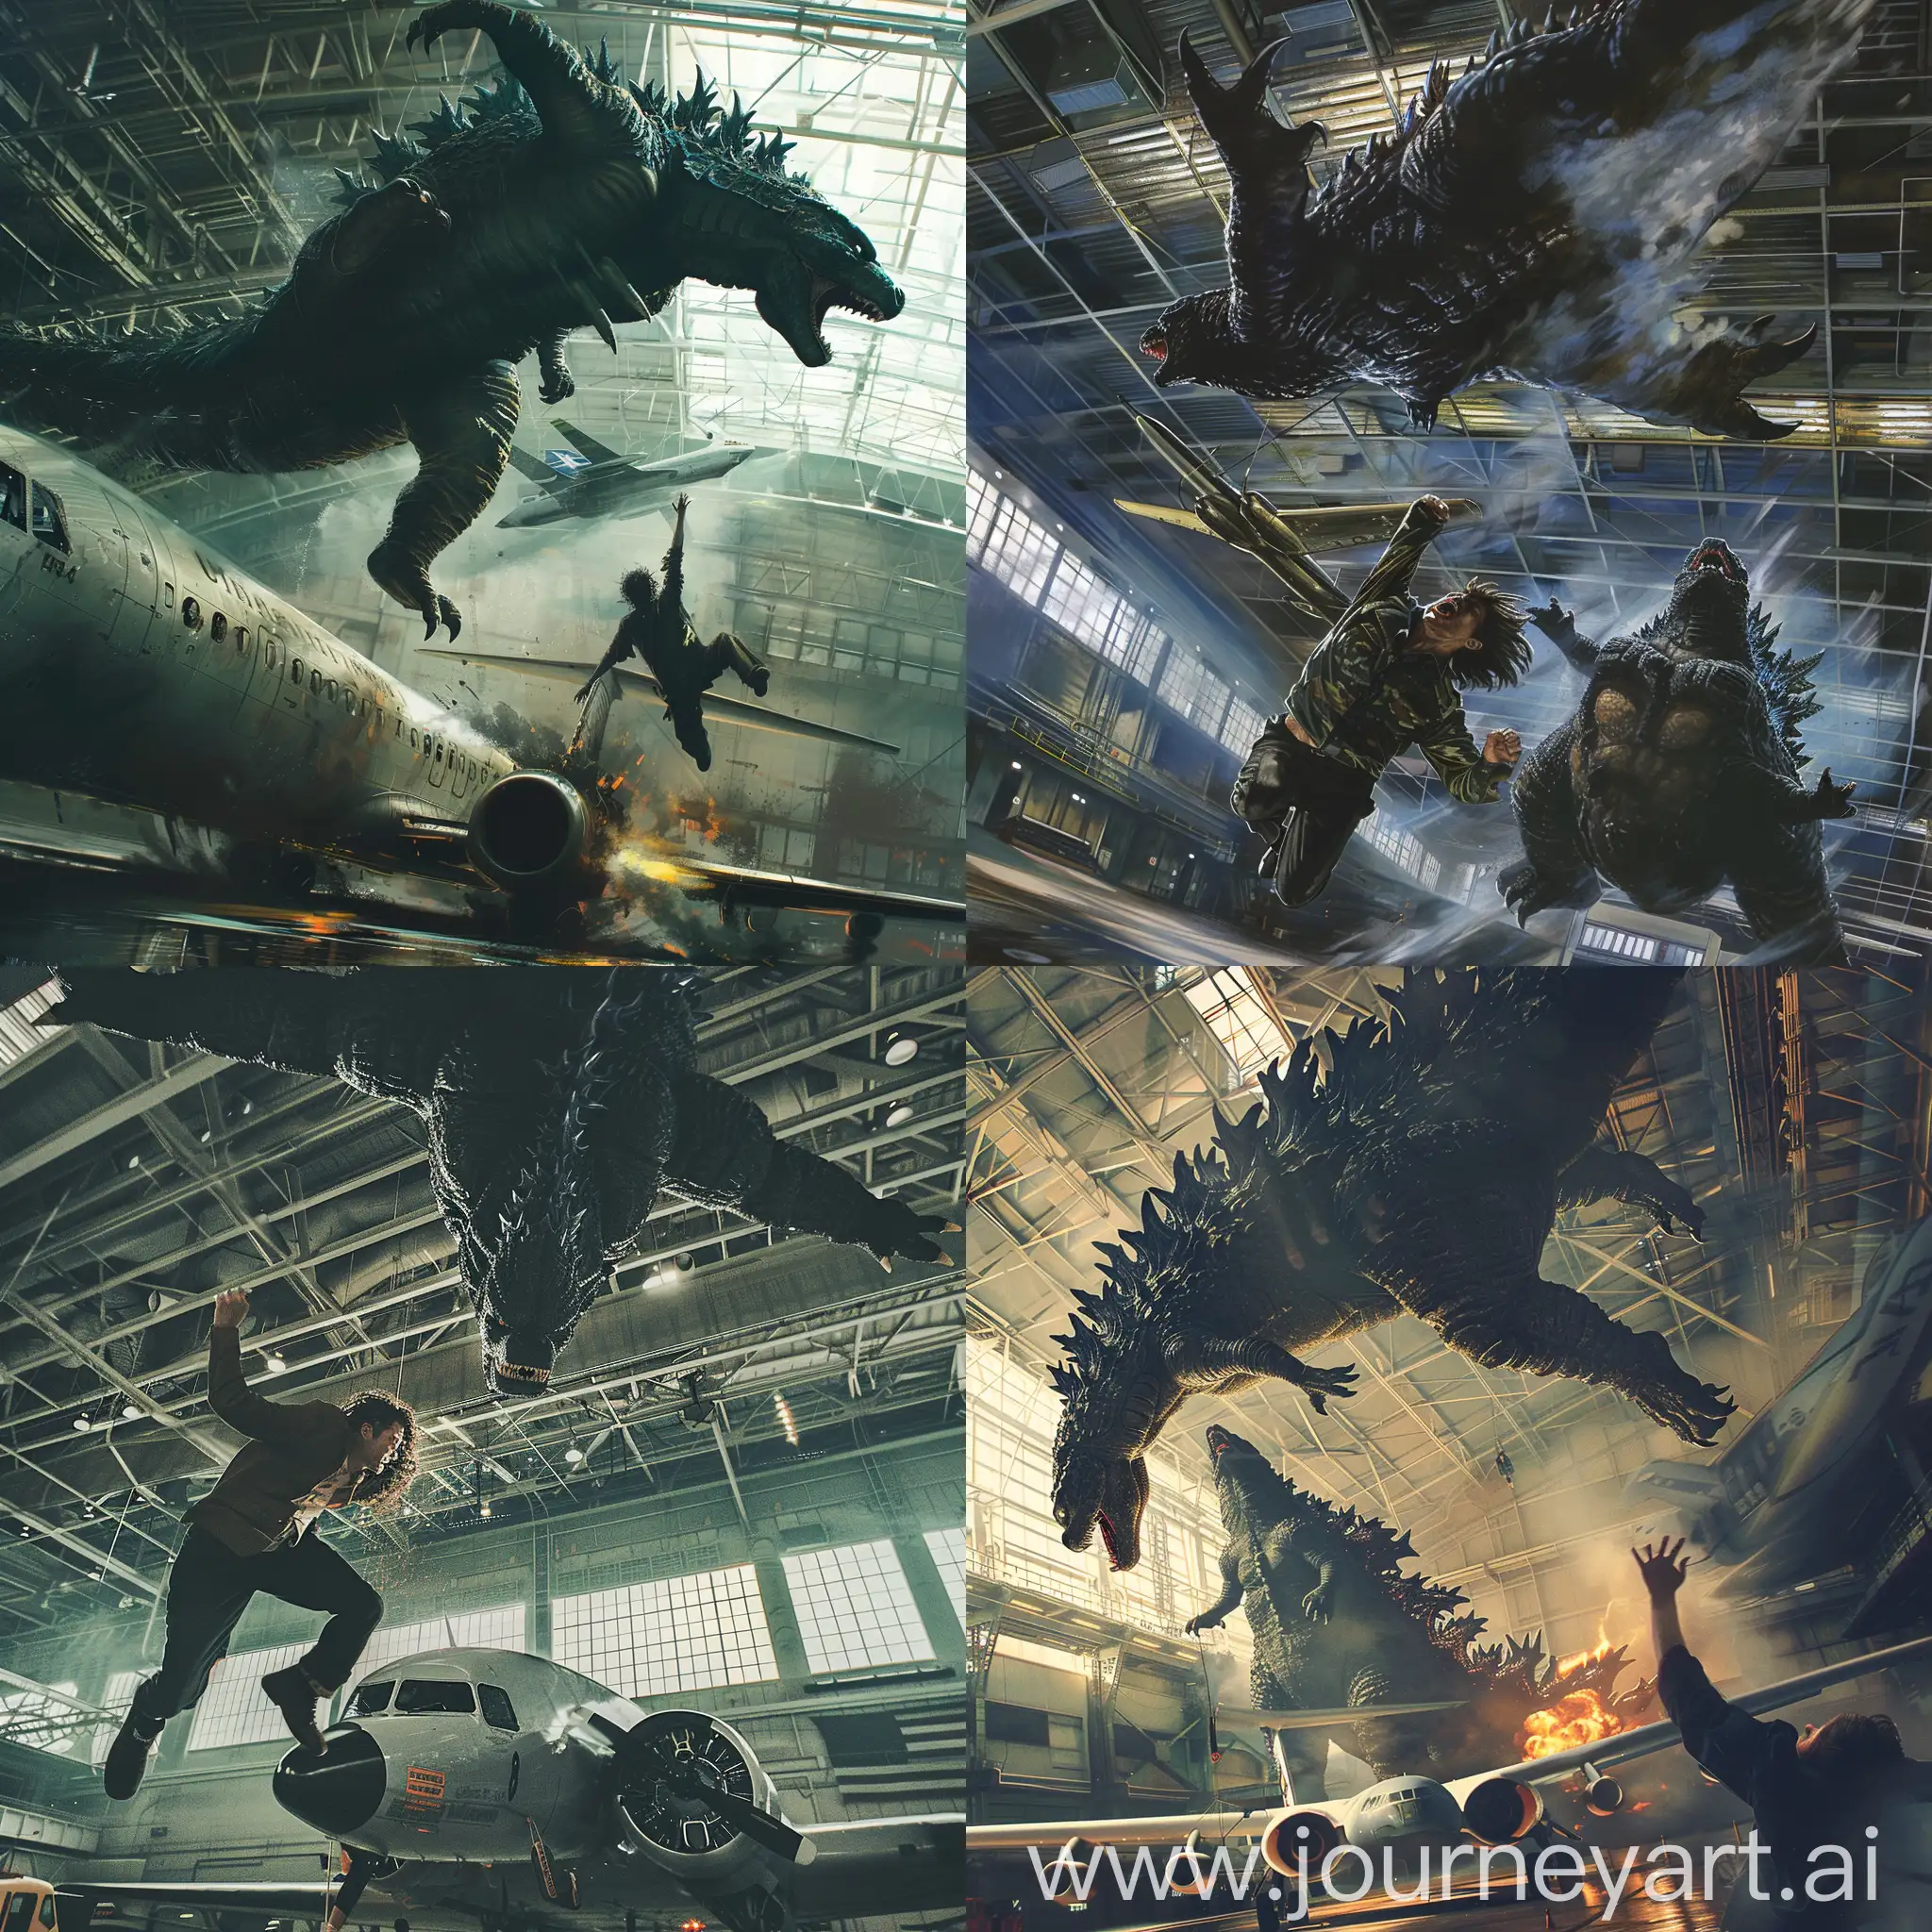 Inverted-Escape-Insane-Man-Fleeing-Godzilla-in-Airplane-Hangar